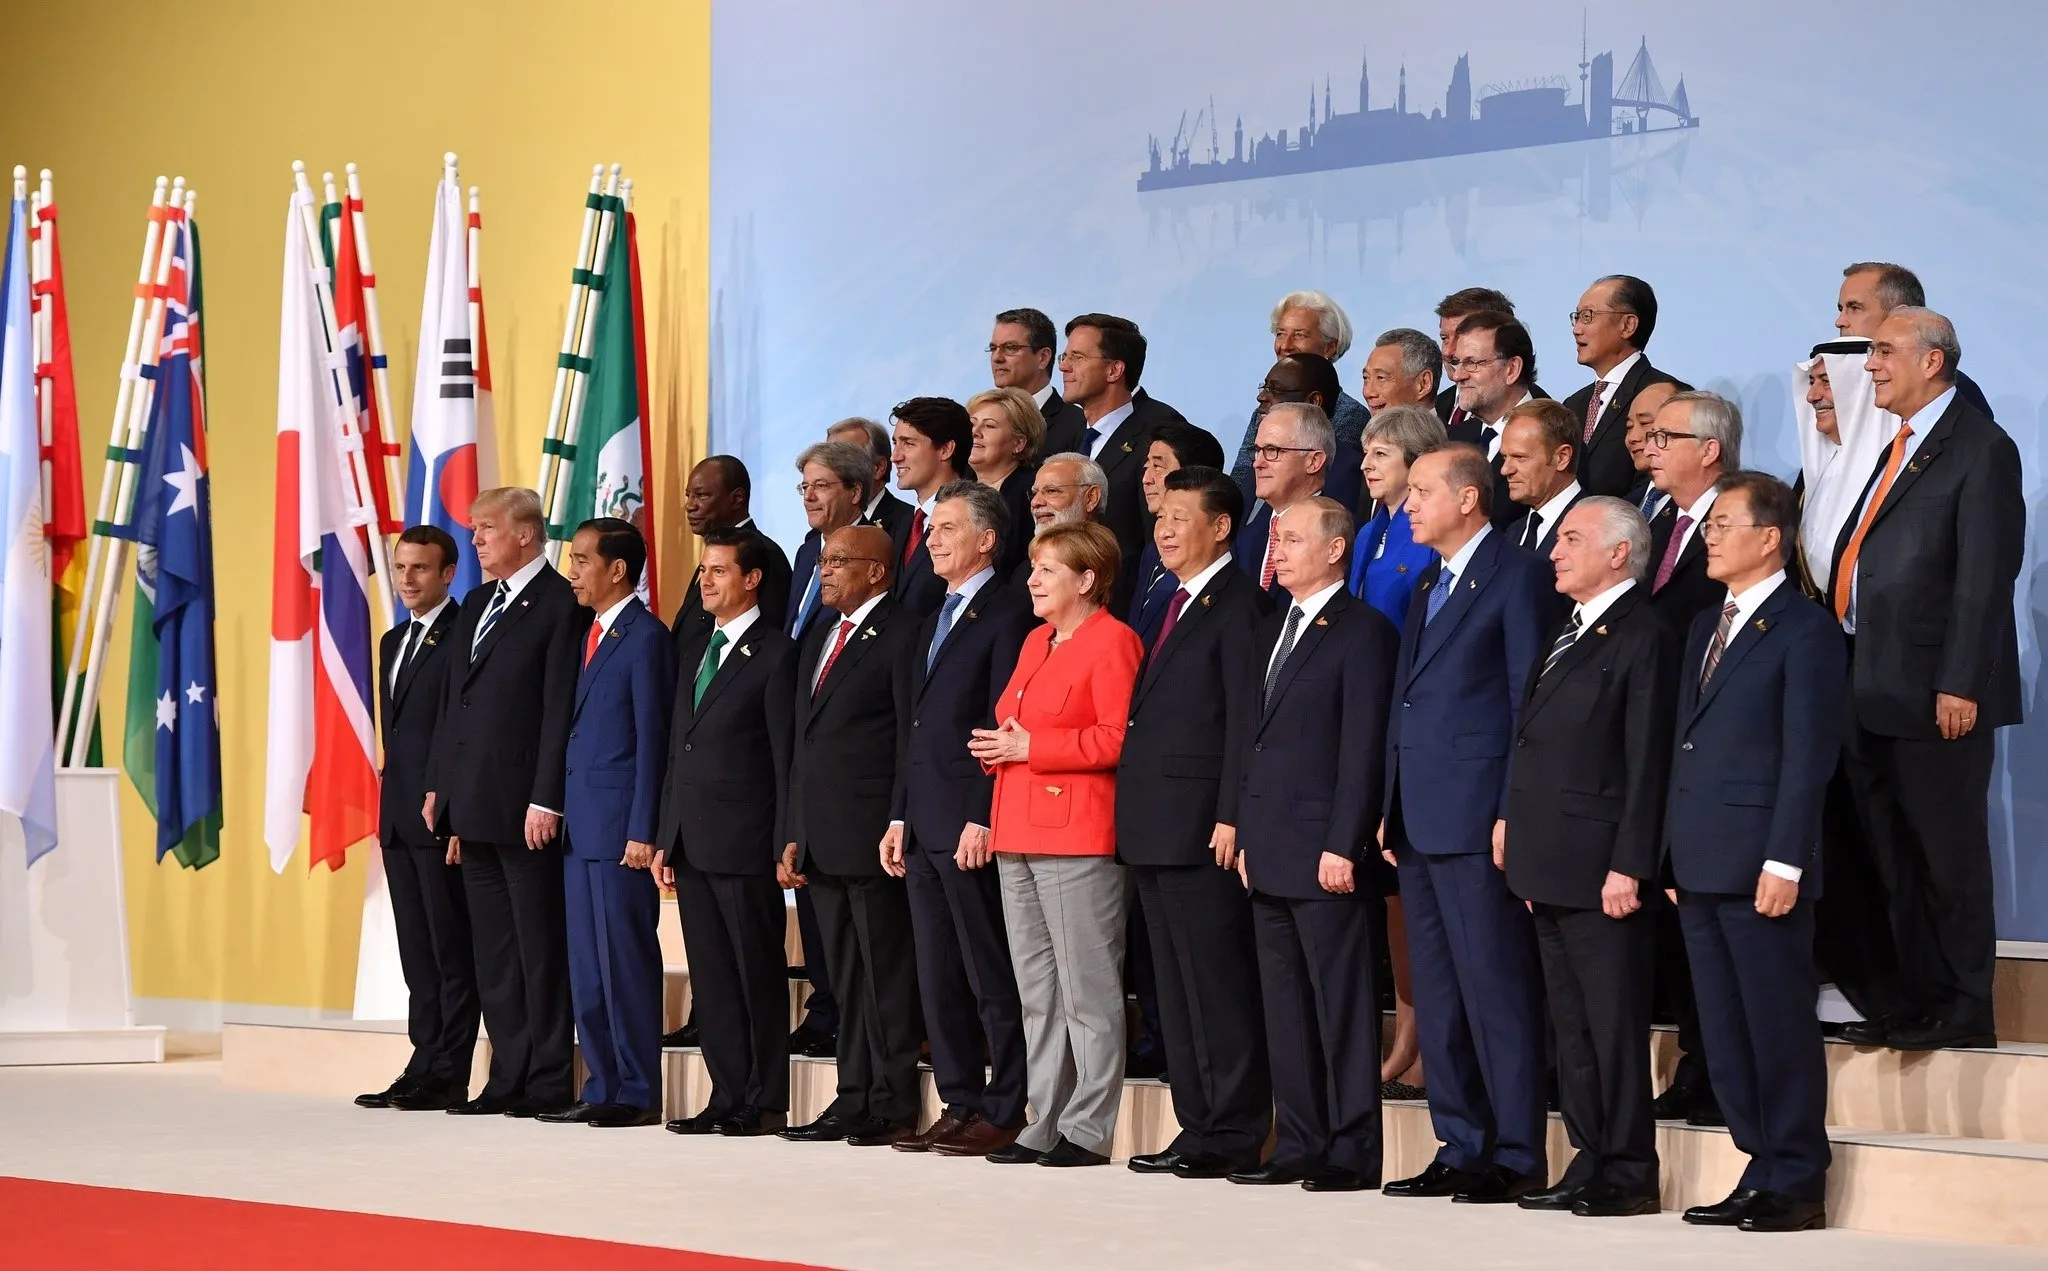 Форум саммит. Группа 20 саммит. Большой двадцатки g20. G20 Summit. Большая двадцатка g20 состав.